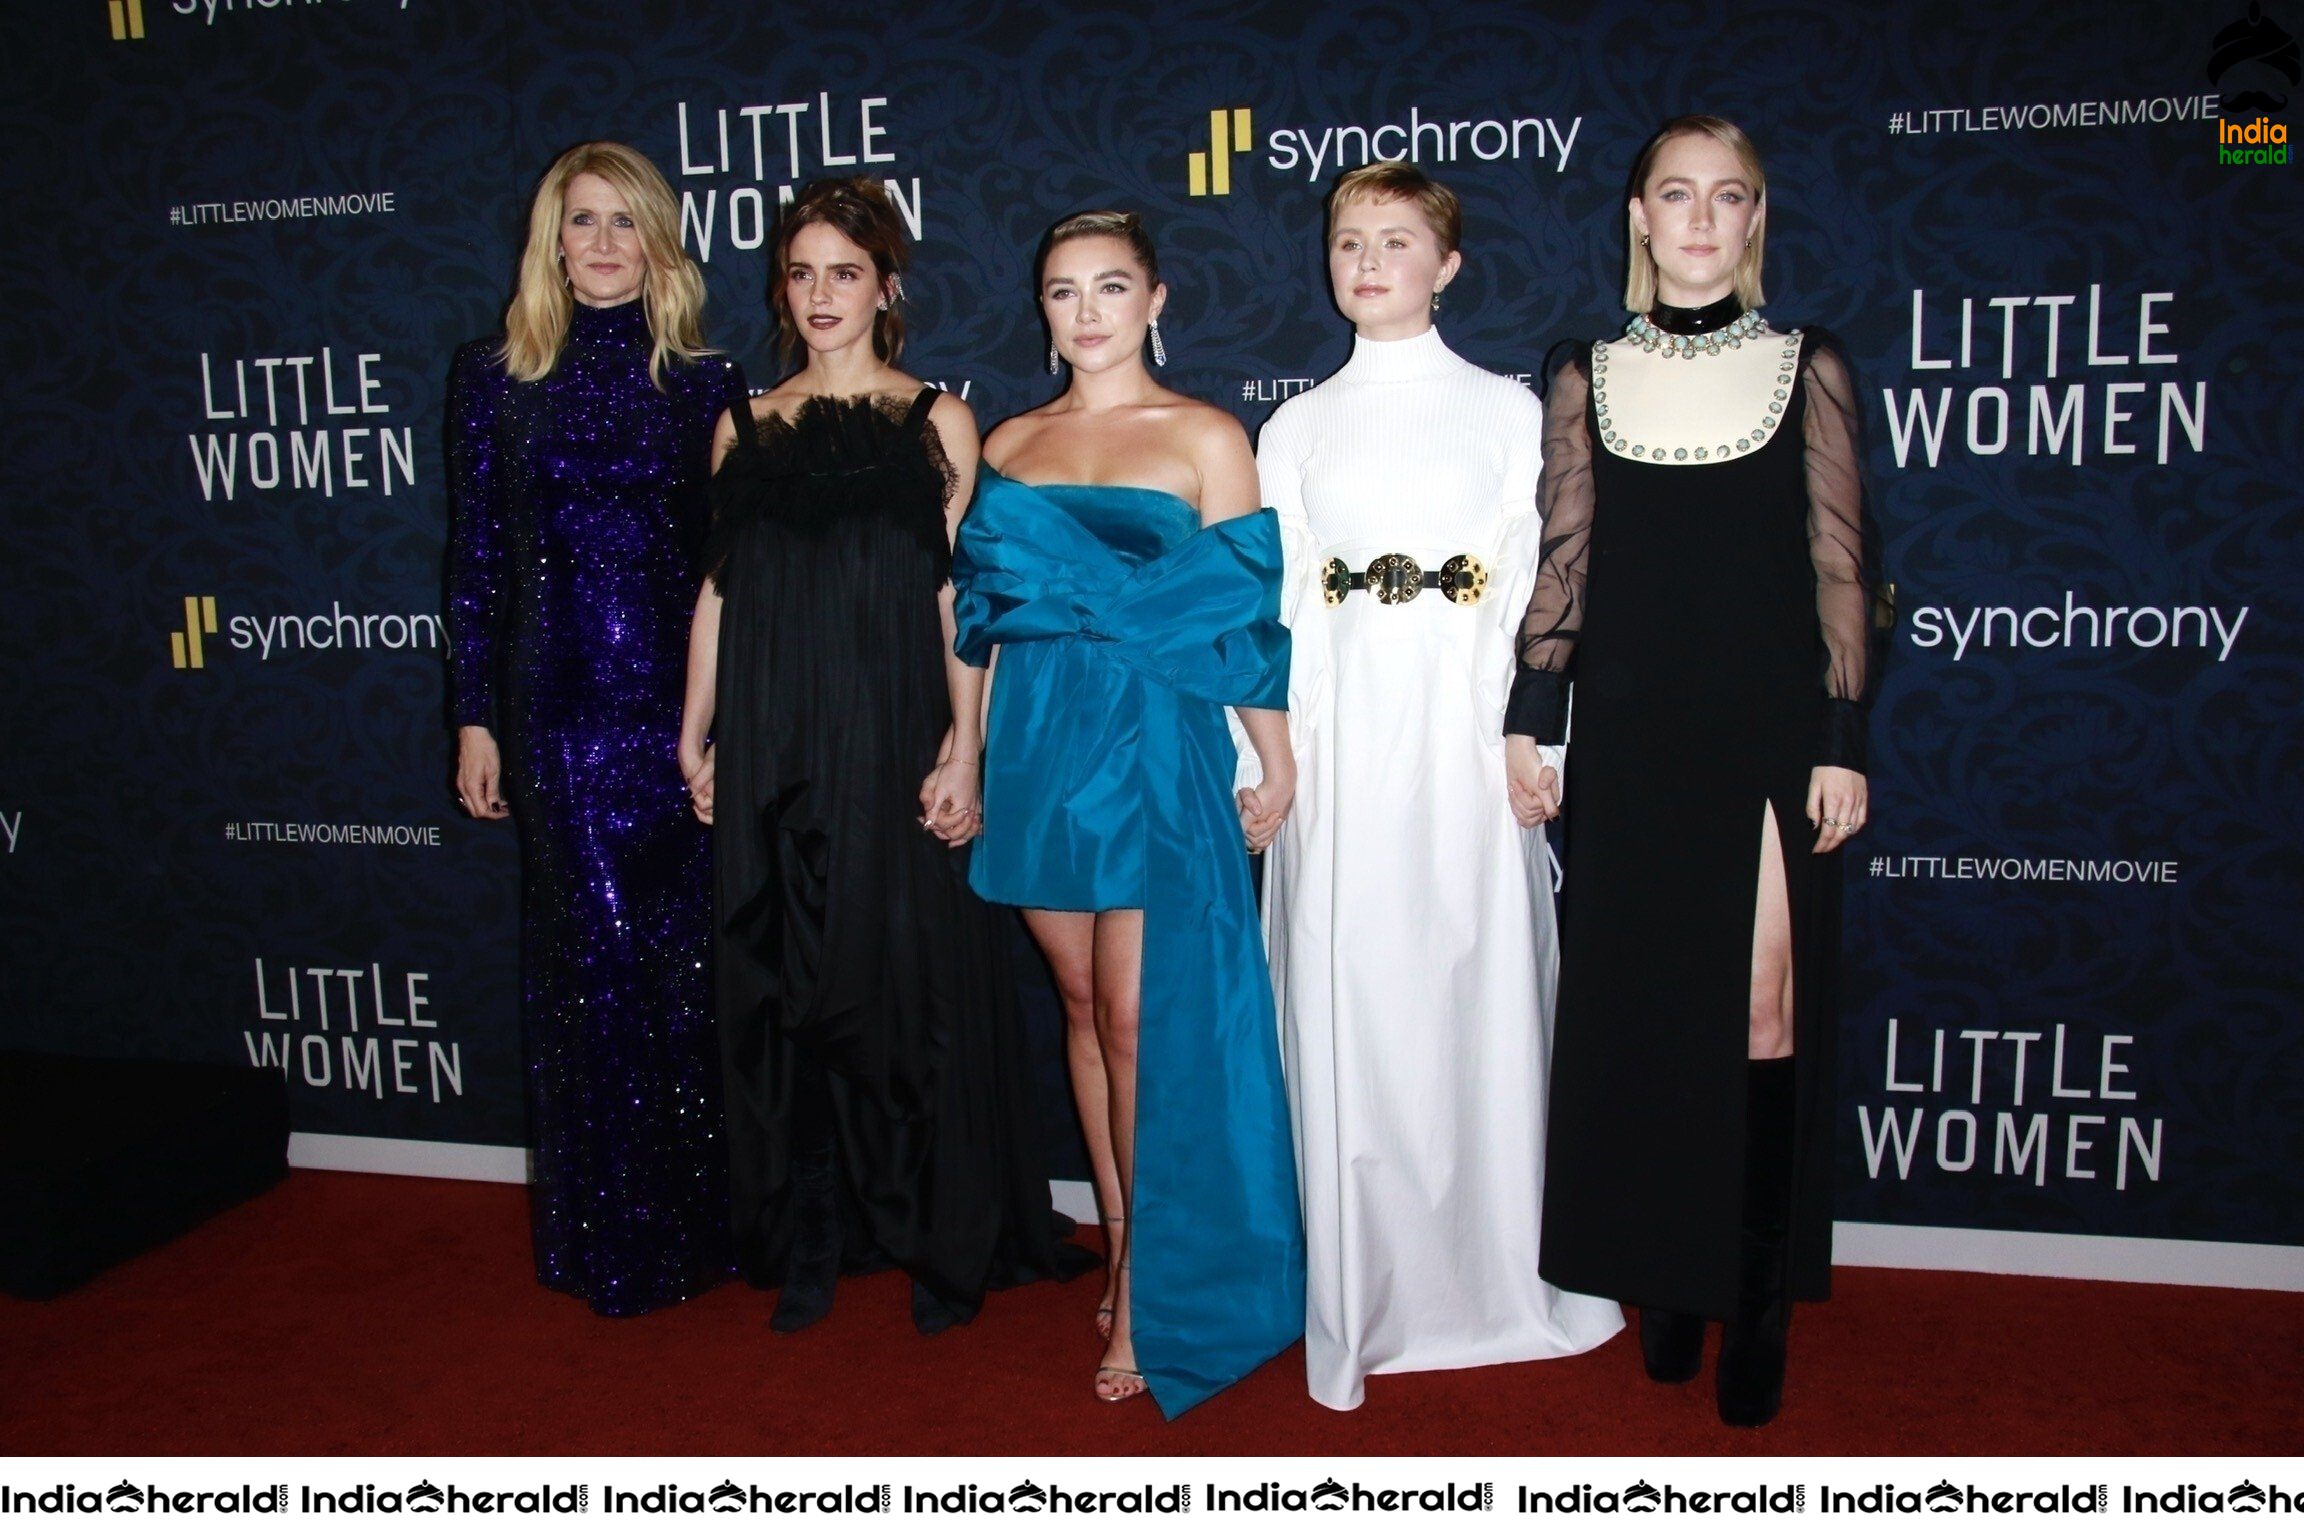 Emma Watson at Little Women Premiere in New York City Set 2